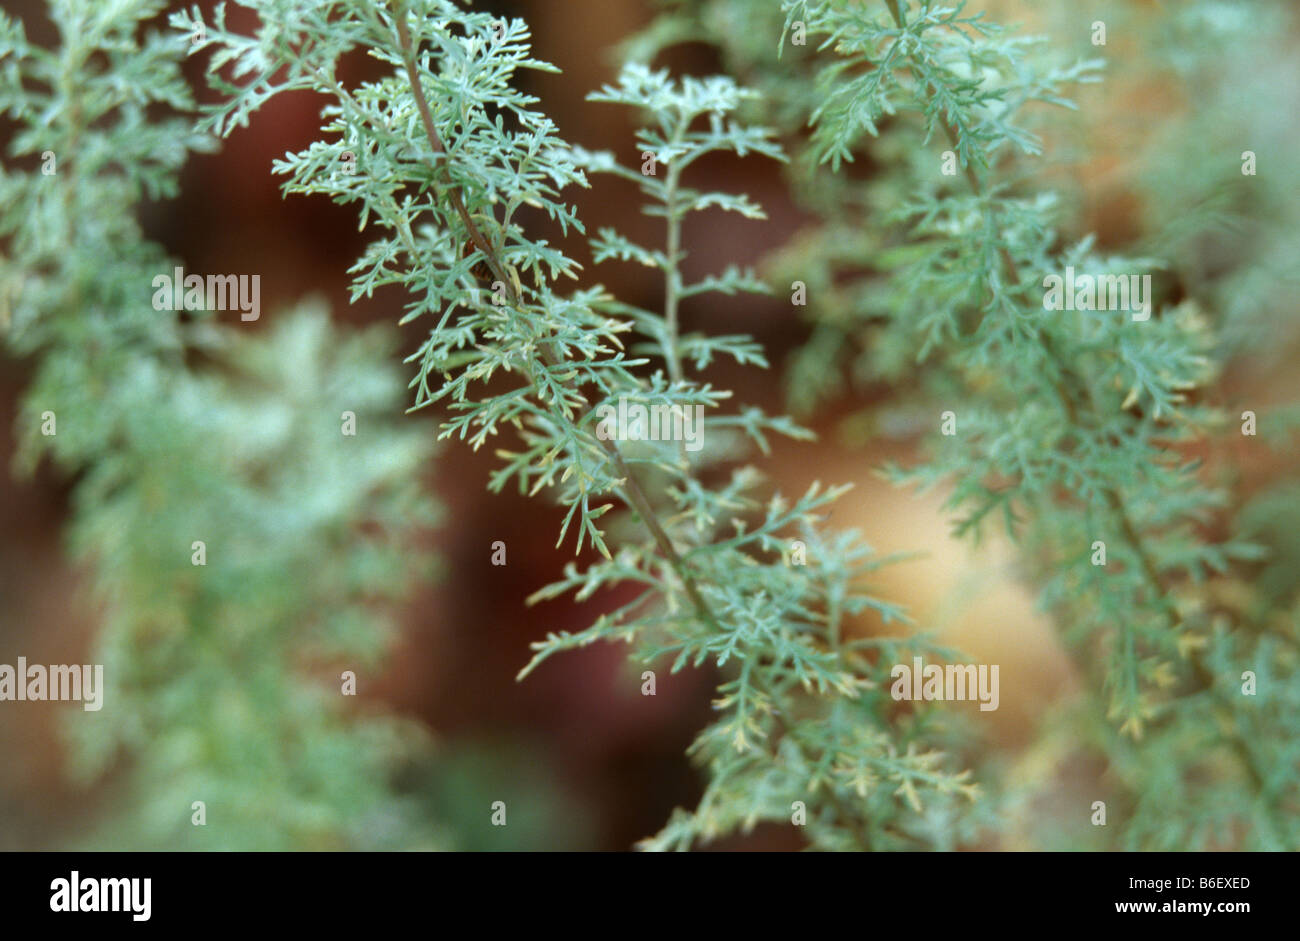 Roman wormwood (Artemisia pontica), sprout Stock Photo